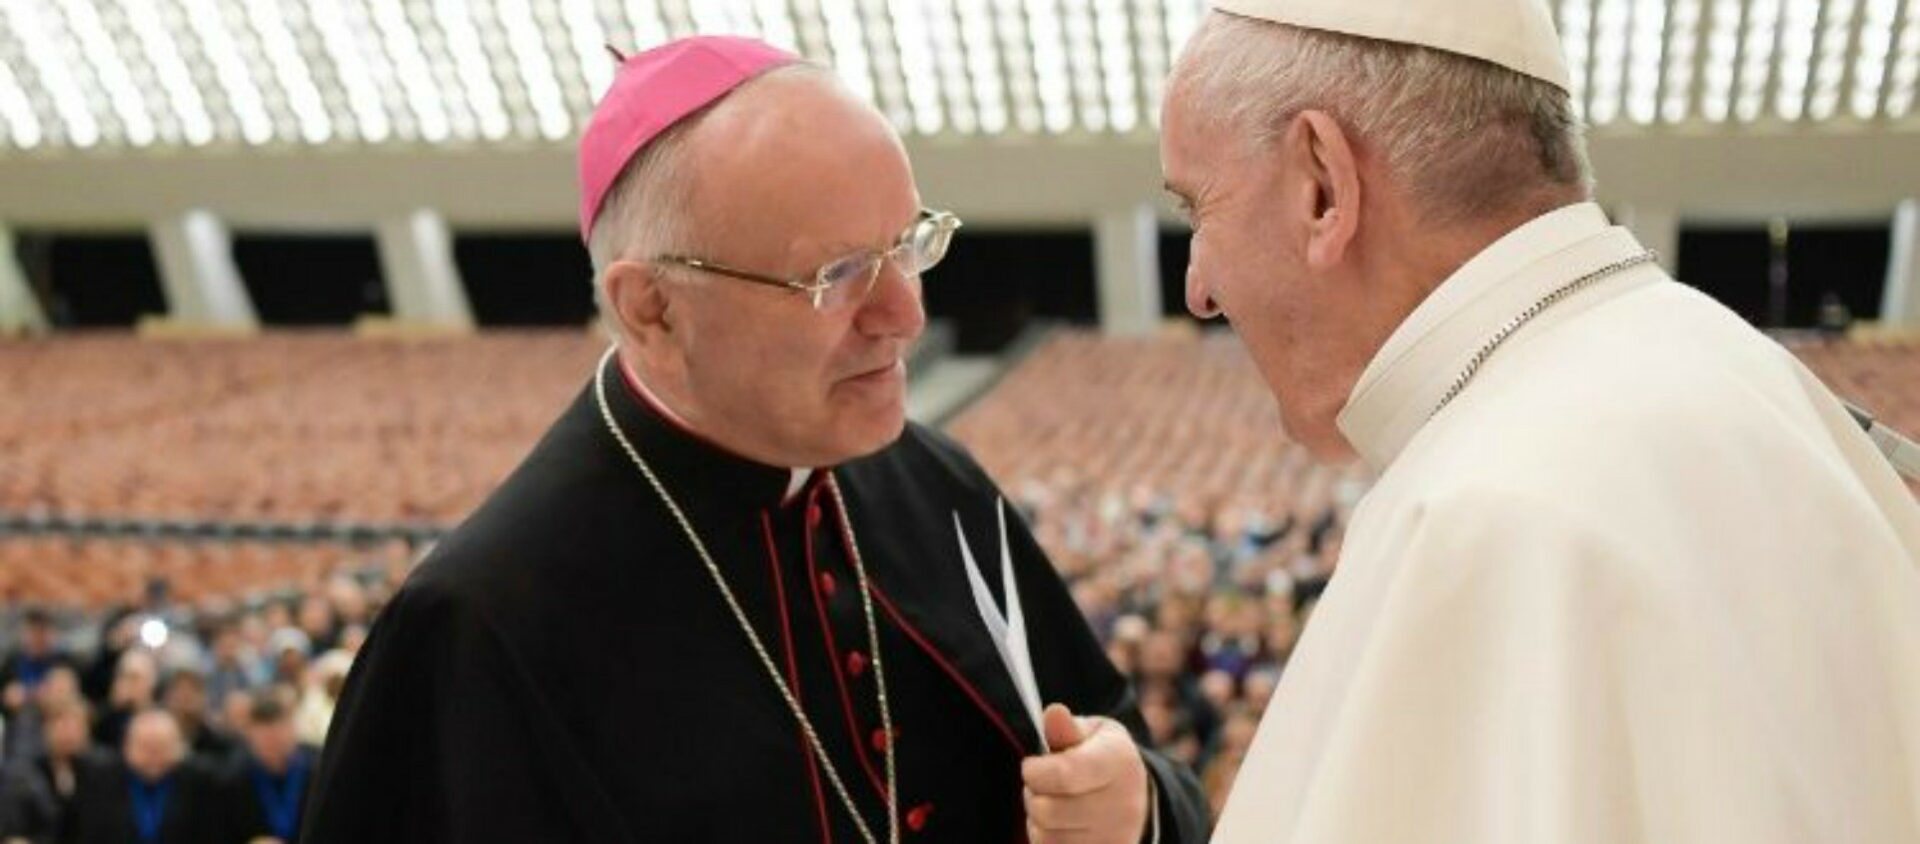 Mgr Nunzio Galantino, directeur de l’Administration du patrimoine du siège apostolique (APSA), avec le pape François | © Vatican media